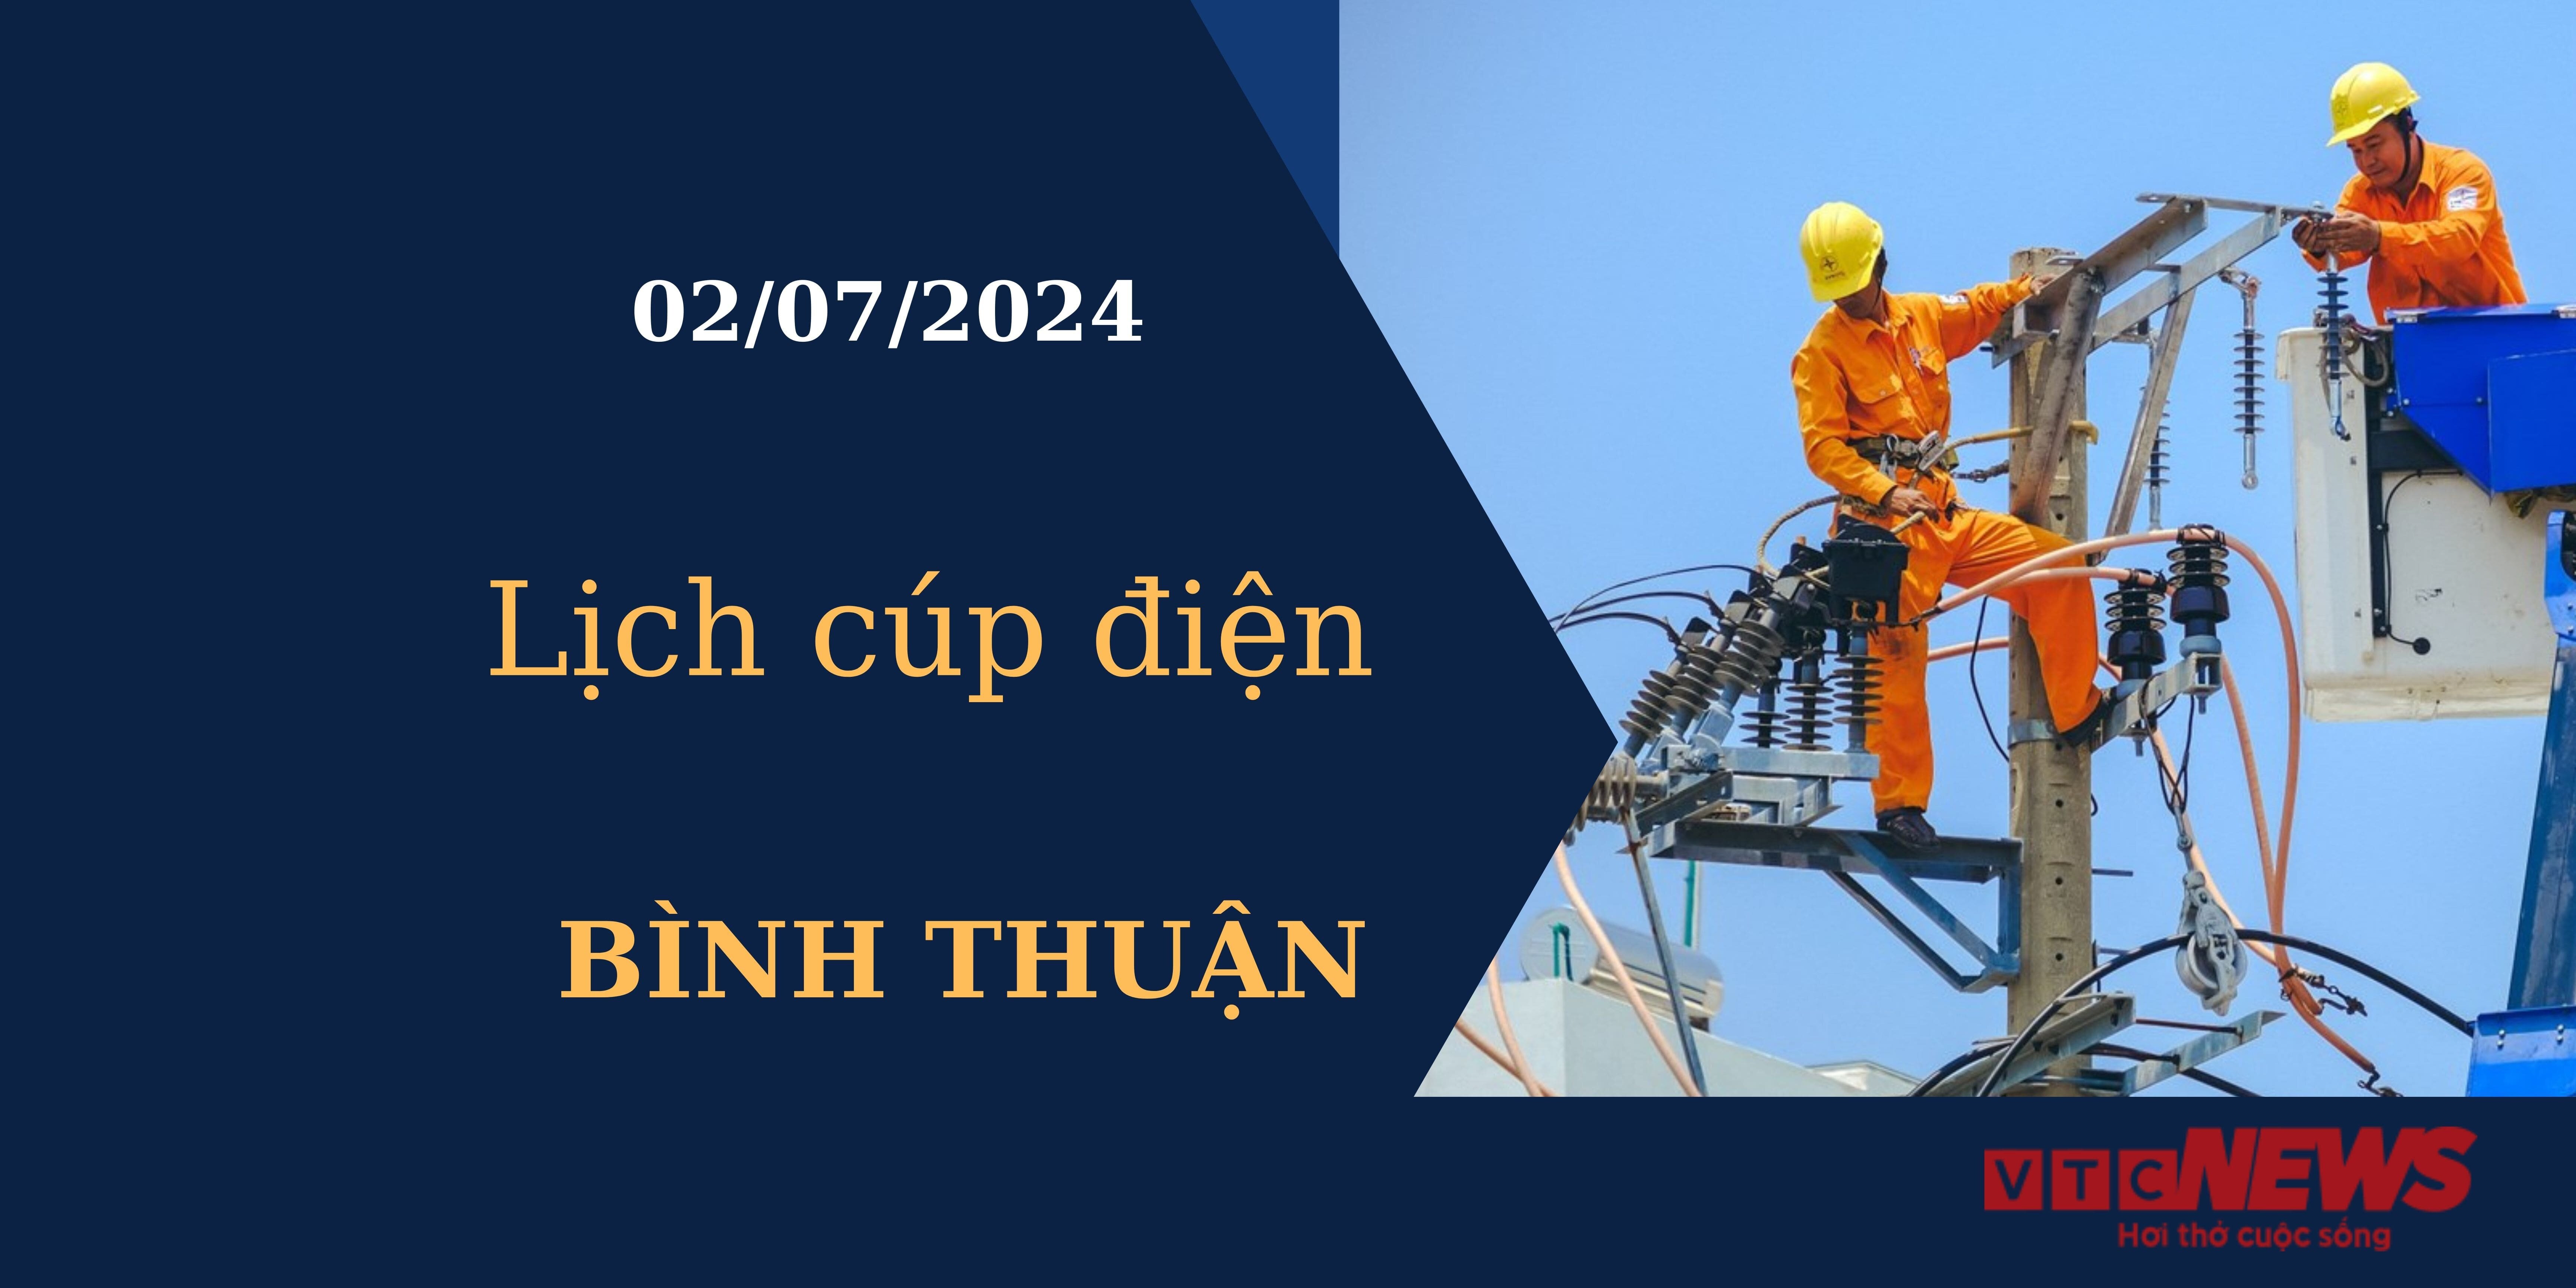 Lịch cúp điện hôm nay tại Bình Thuận ngày 02/07/2024